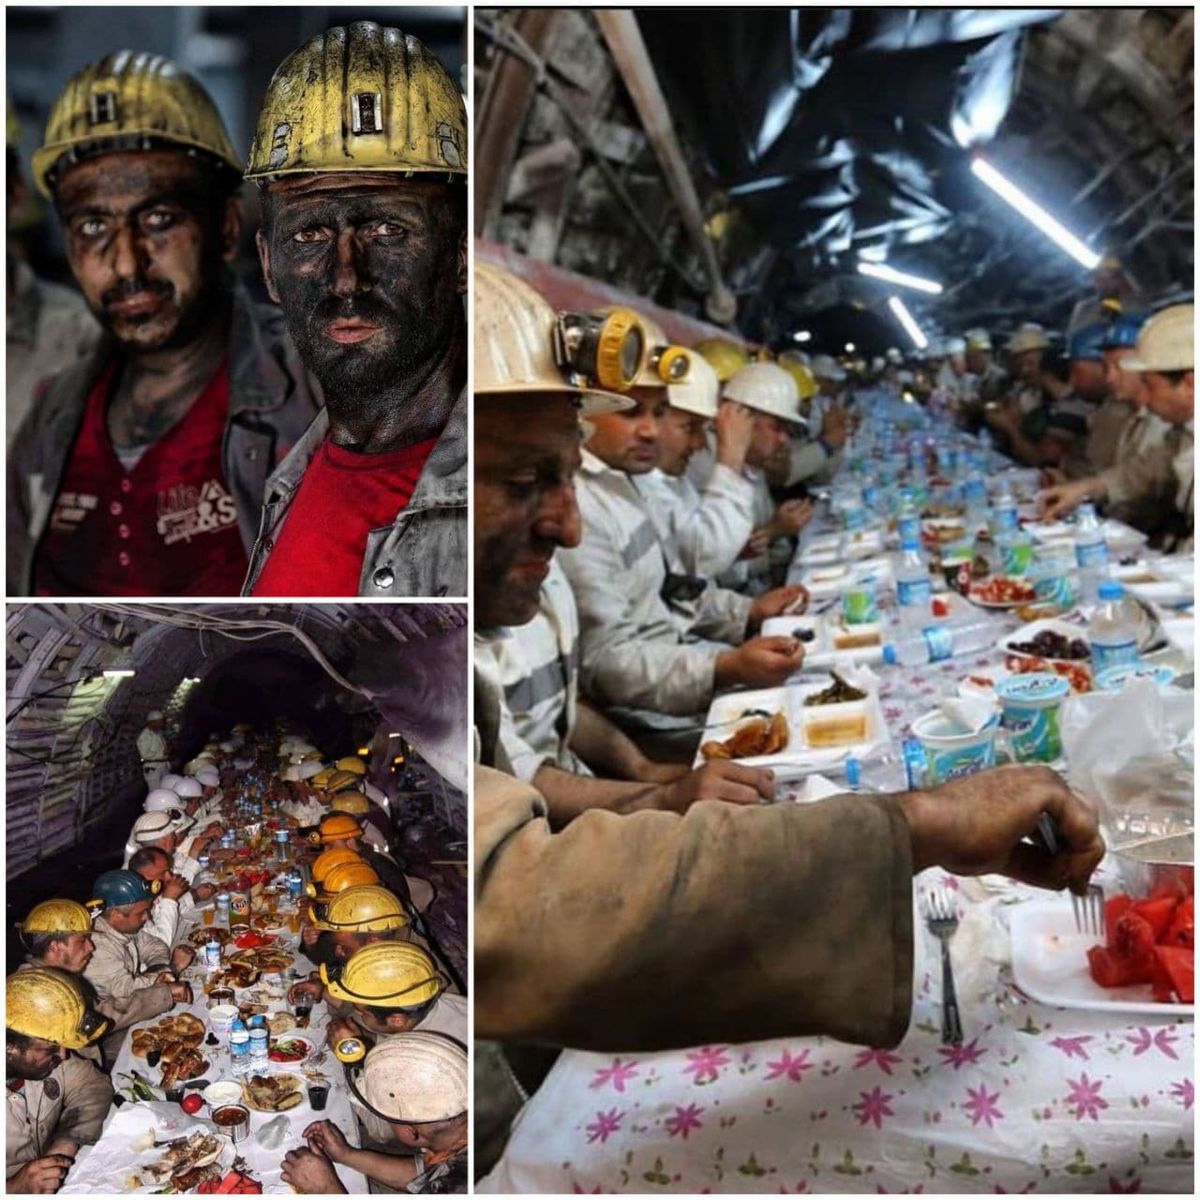 کارگران معدن در ترکیه در حال افطار +عکس